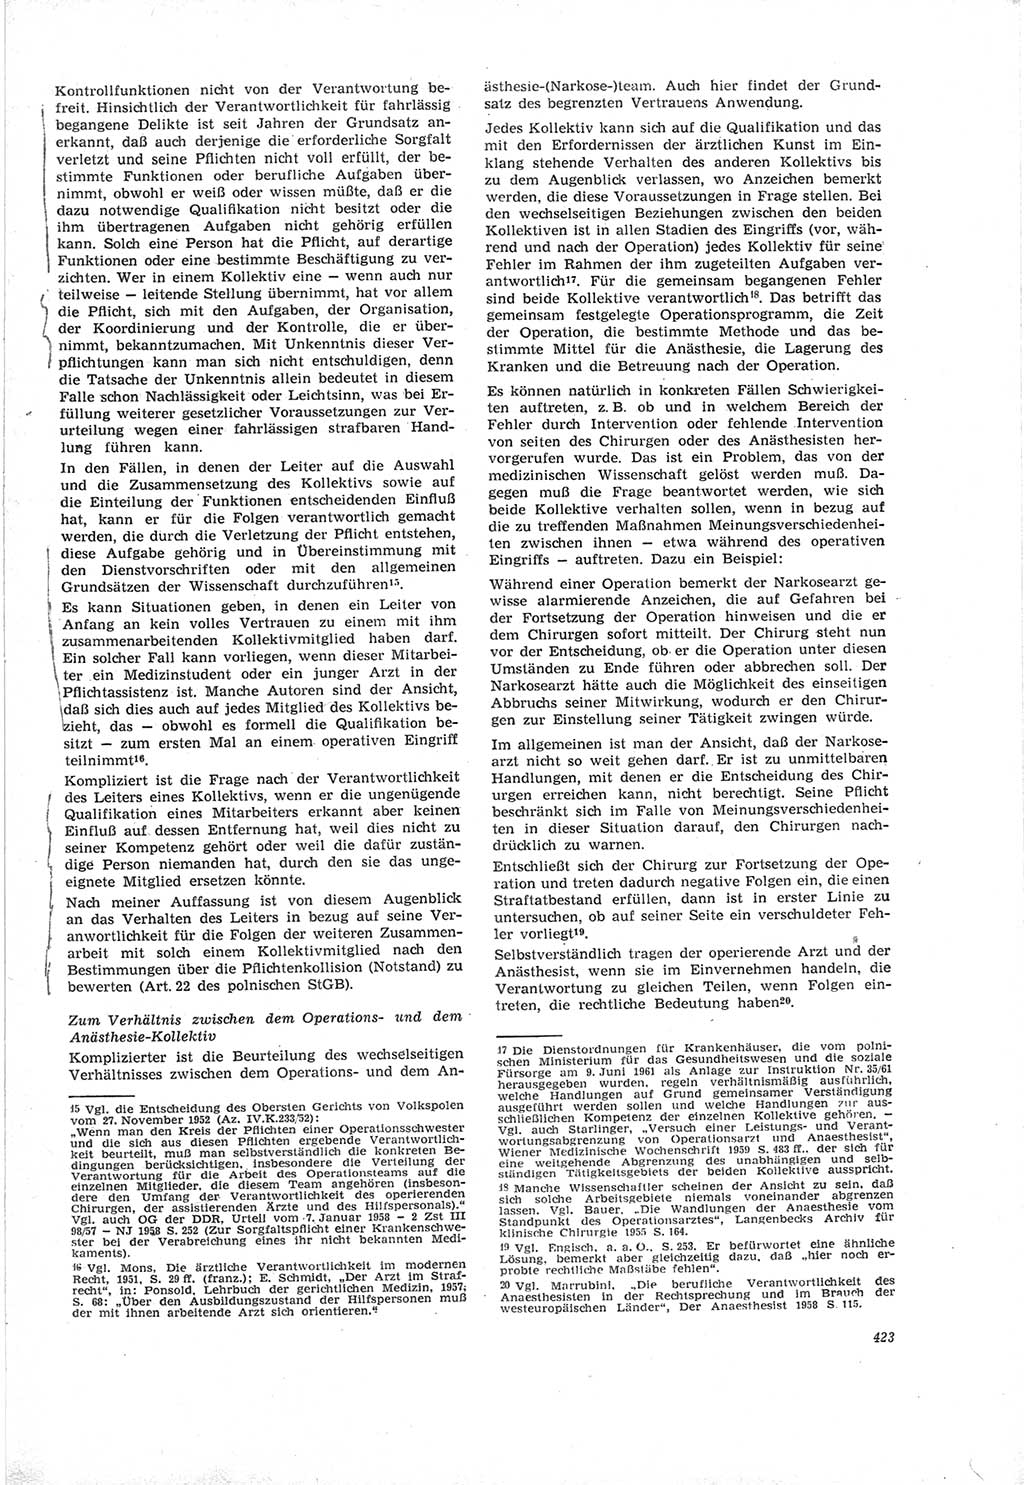 Neue Justiz (NJ), Zeitschrift für Recht und Rechtswissenschaft [Deutsche Demokratische Republik (DDR)], 19. Jahrgang 1965, Seite 423 (NJ DDR 1965, S. 423)